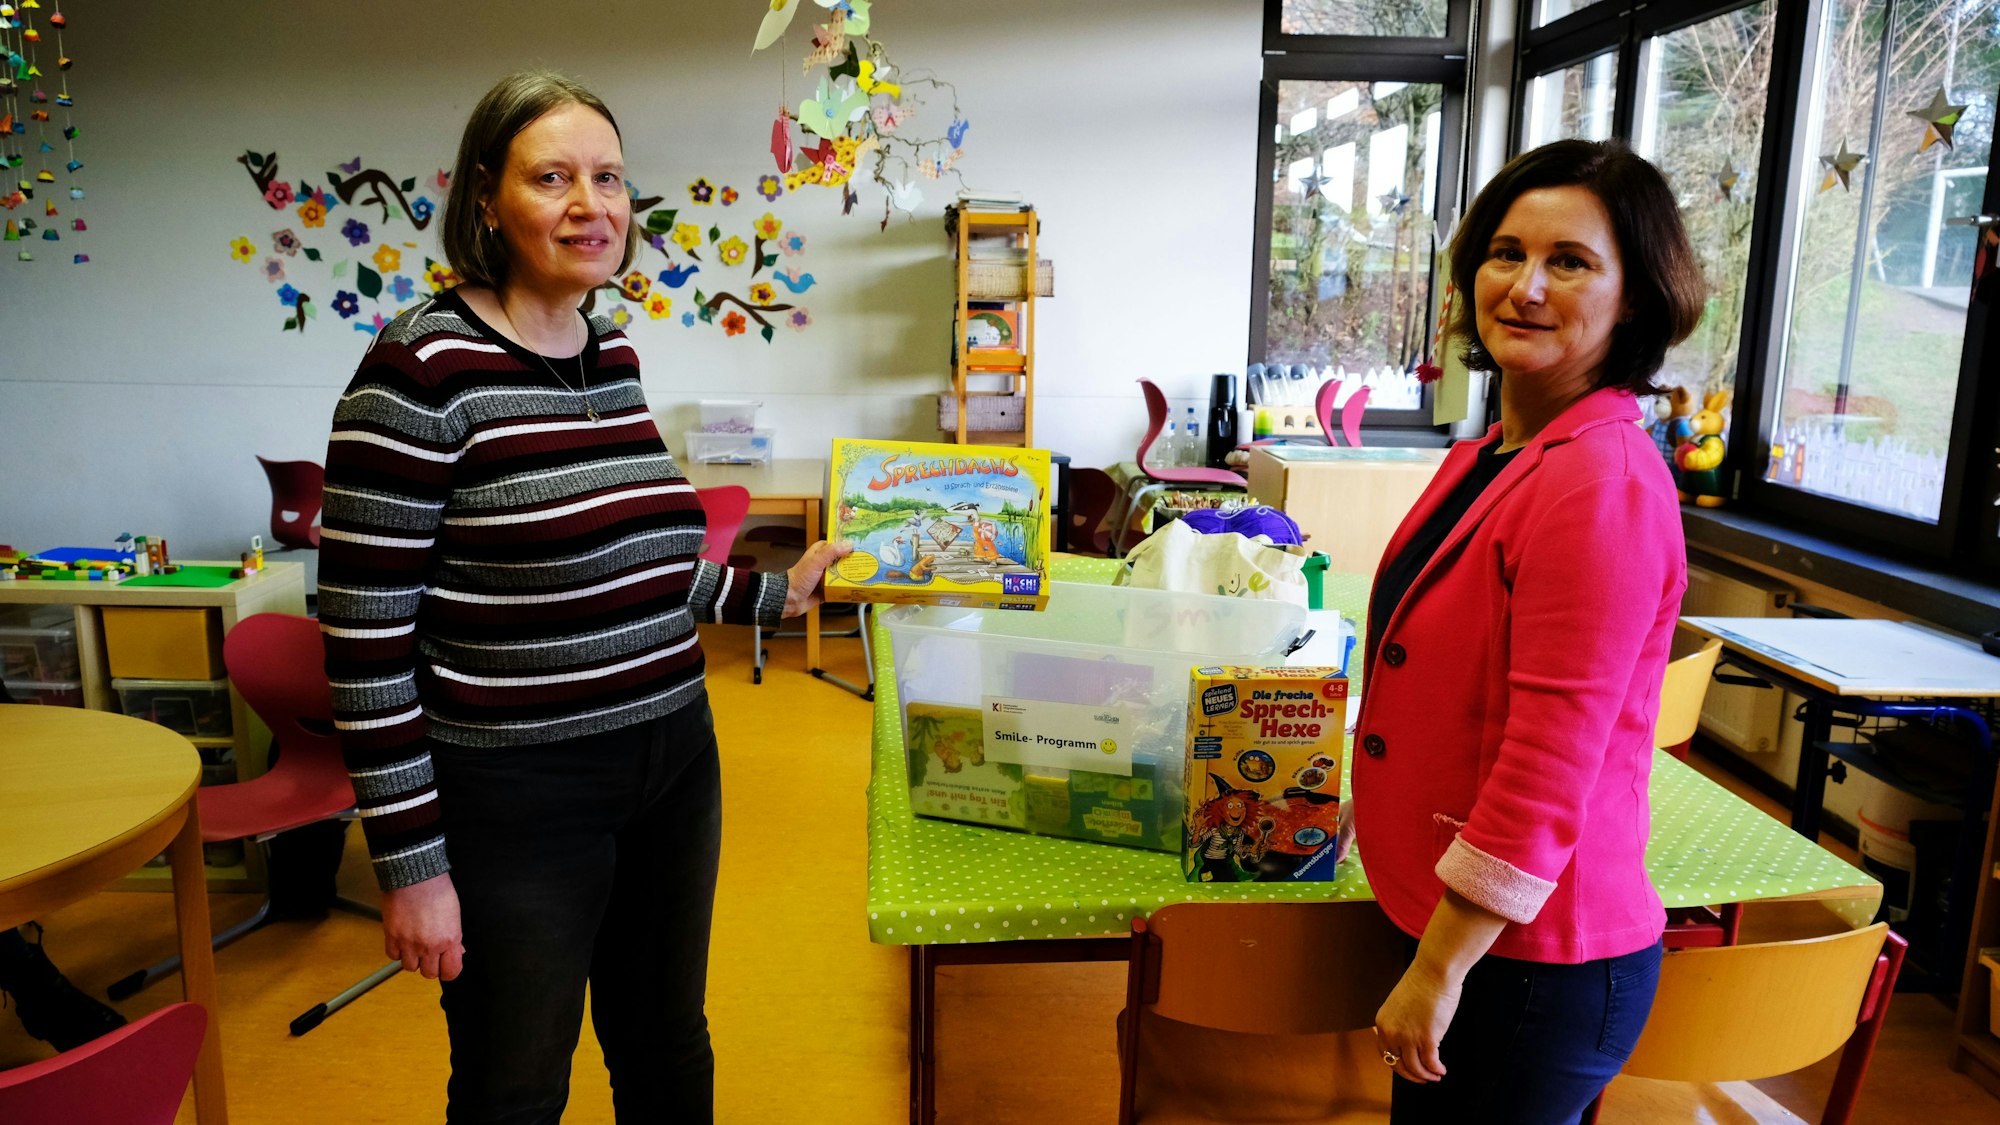 Koordinatorin Suzana Kilickeser und Sprachpatin Ulrike Schmitz präsentieren auf einem Tisch in einem Klassenzimmer der Grundschule Reifferscheid Spiele und Spielsachen.